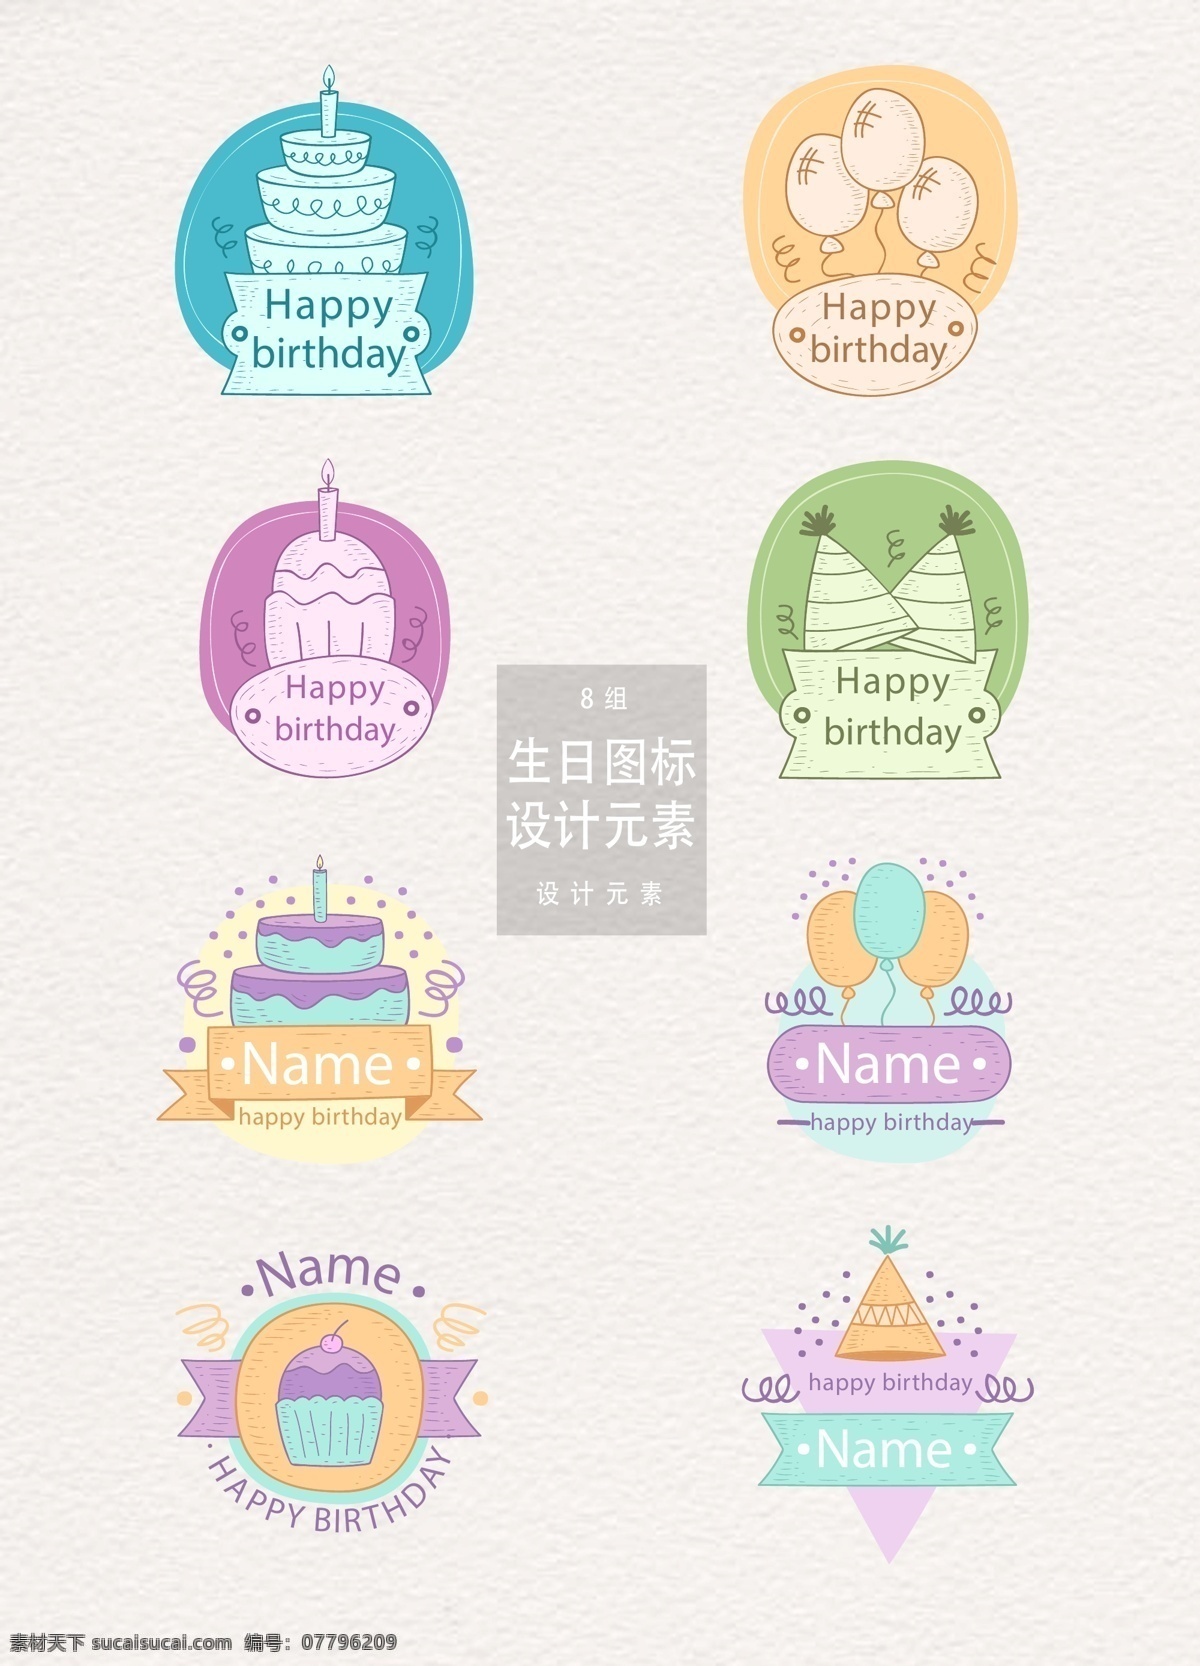 生日 派对 图标 元素 设计元素 生日蛋糕 气球 丝带 生日派对 生日派对图标 生日图标 手绘图标